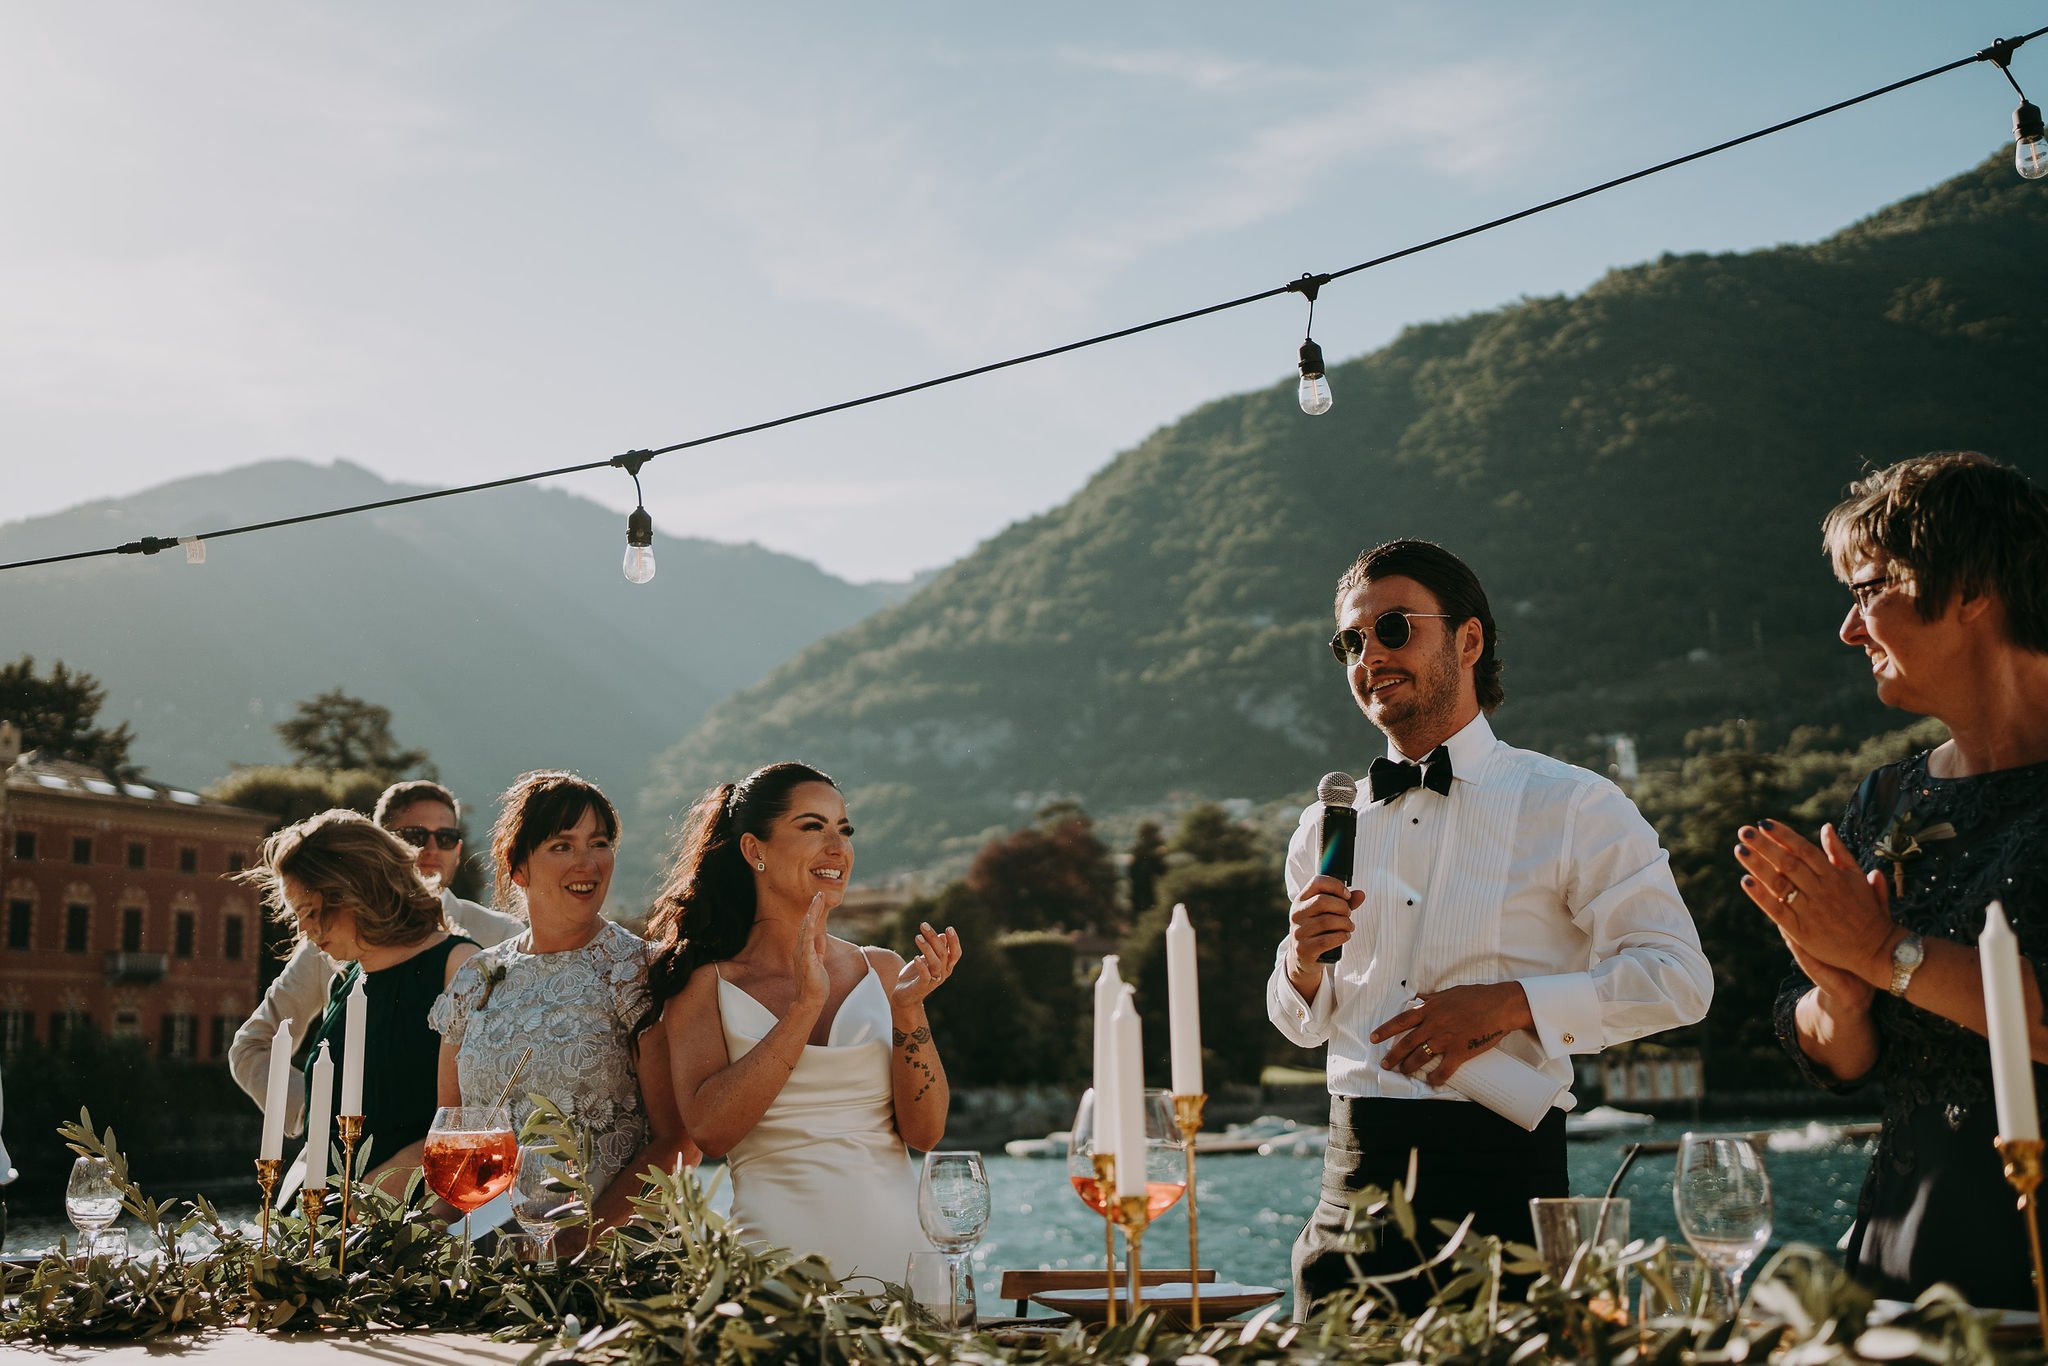 Lake Como, Italy Destination Wedding Photographer